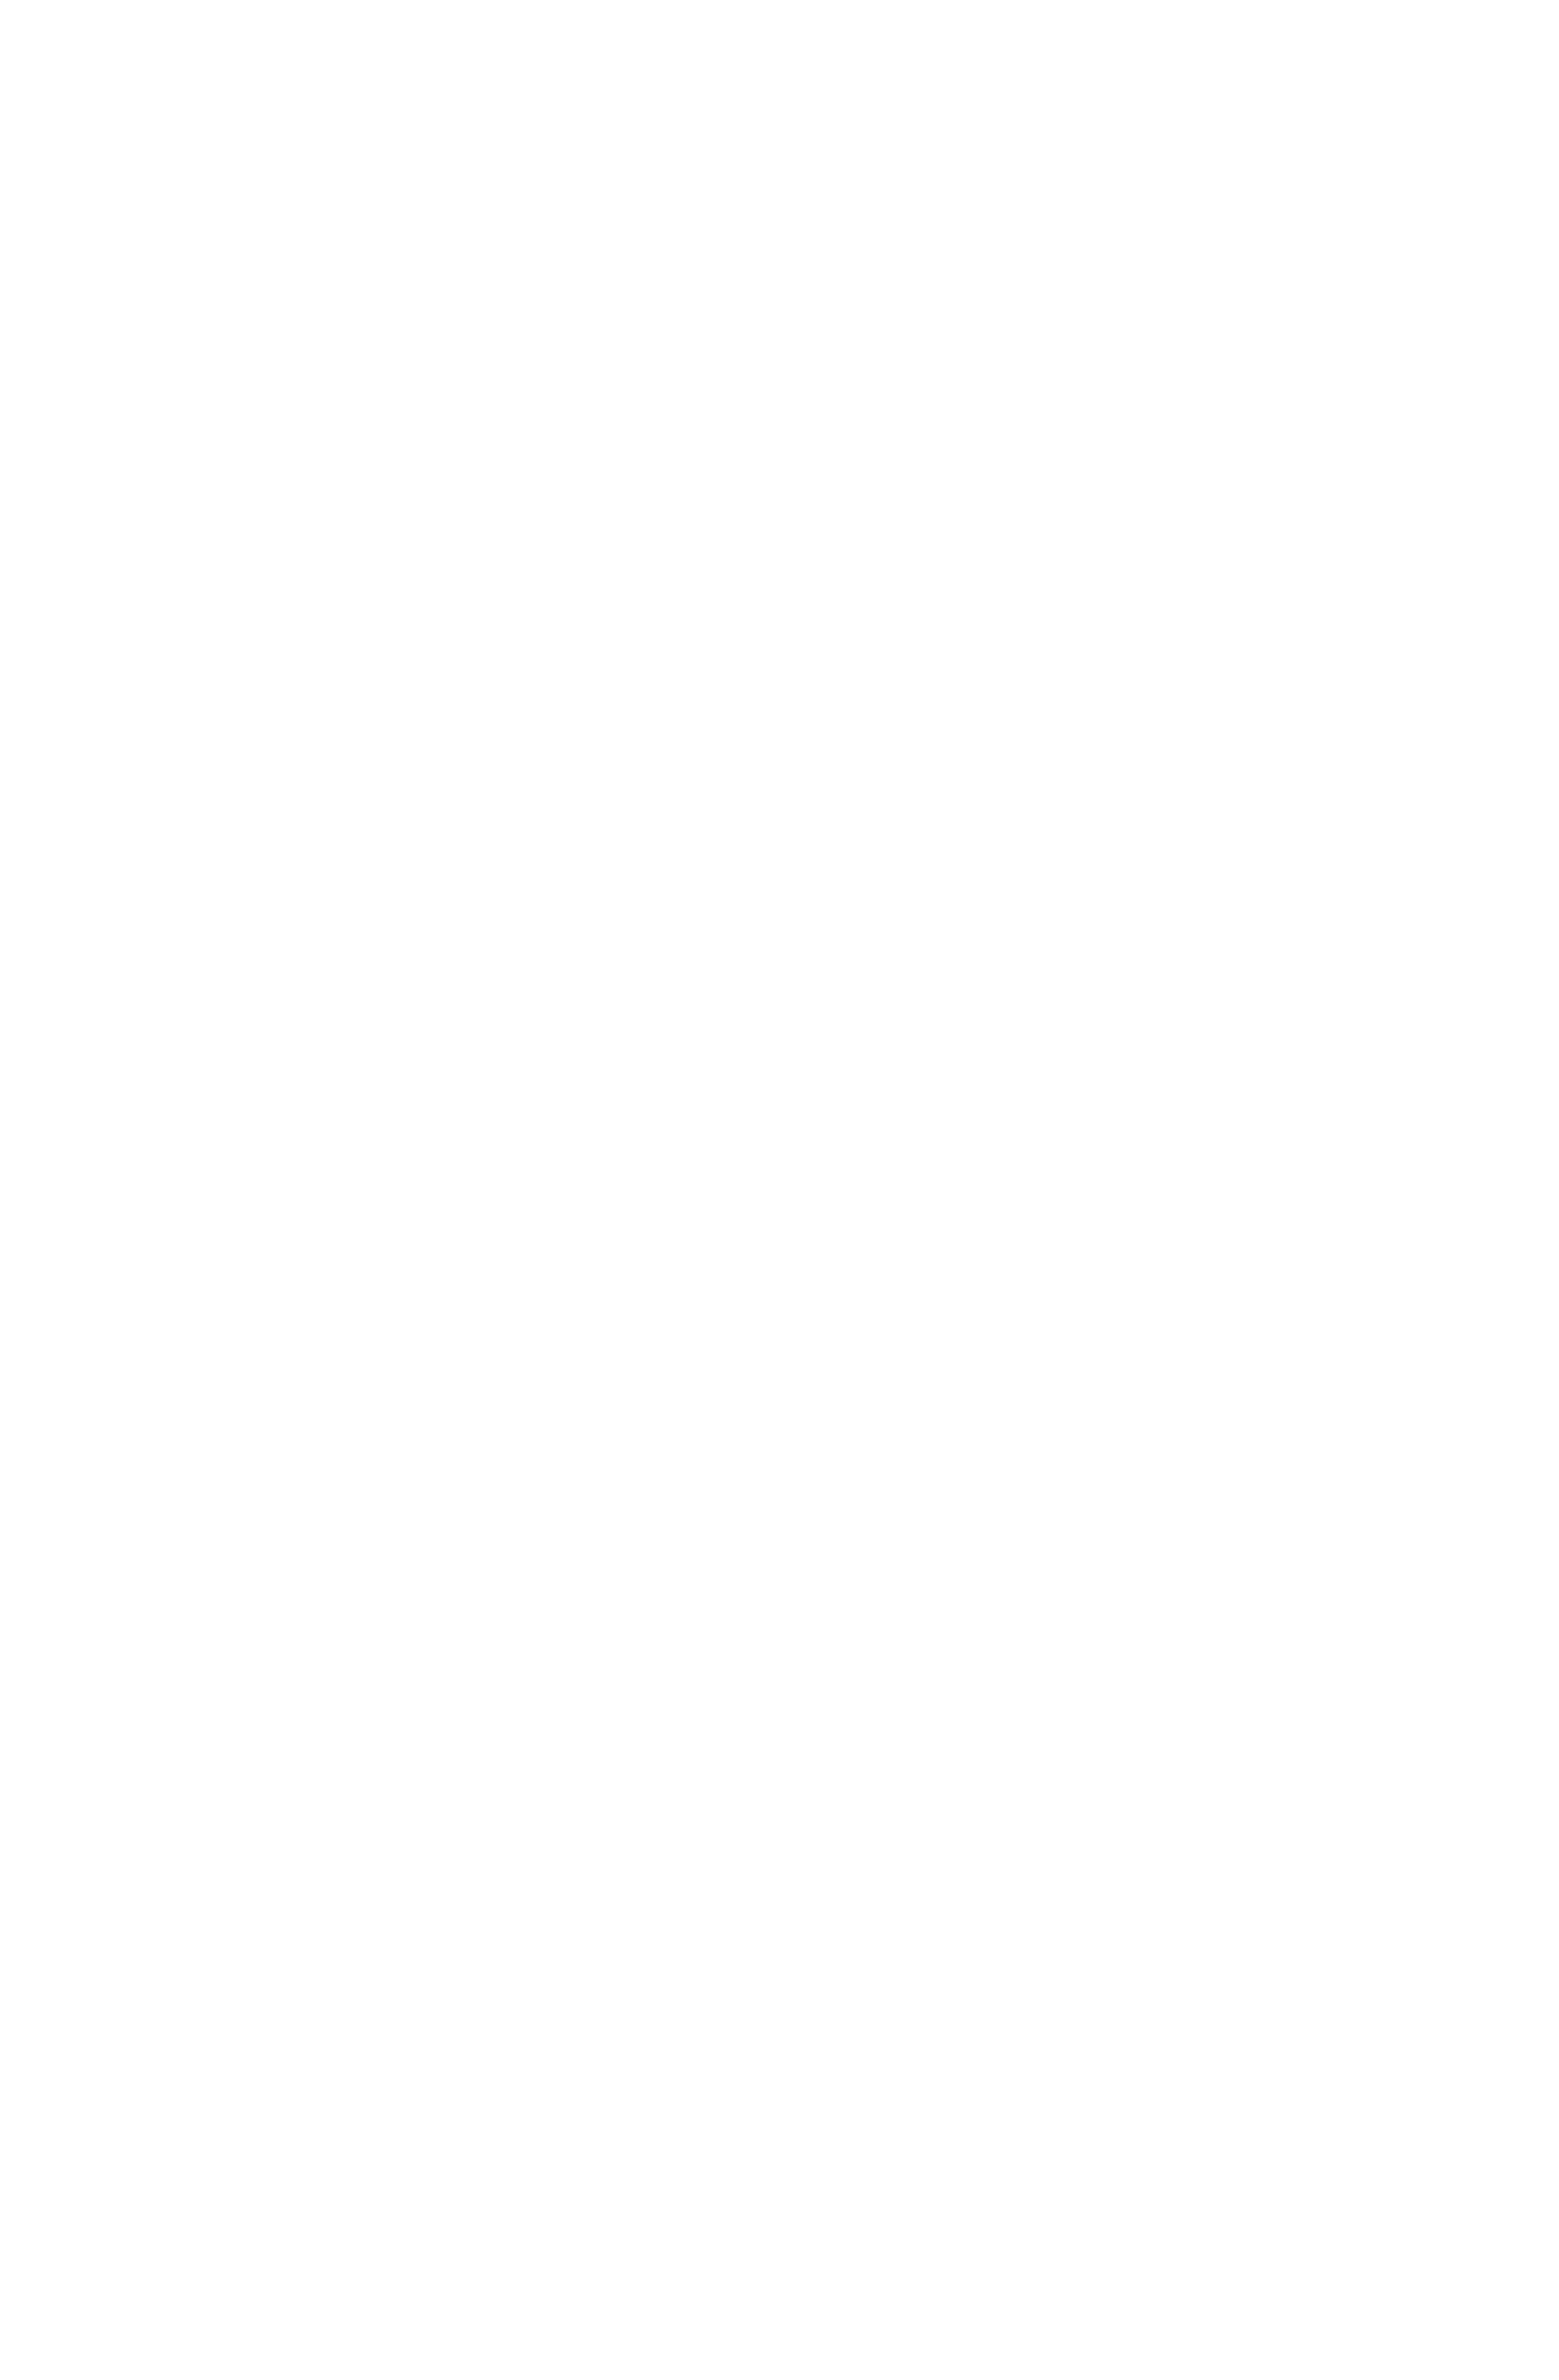 Peter&Paul-Logo.png